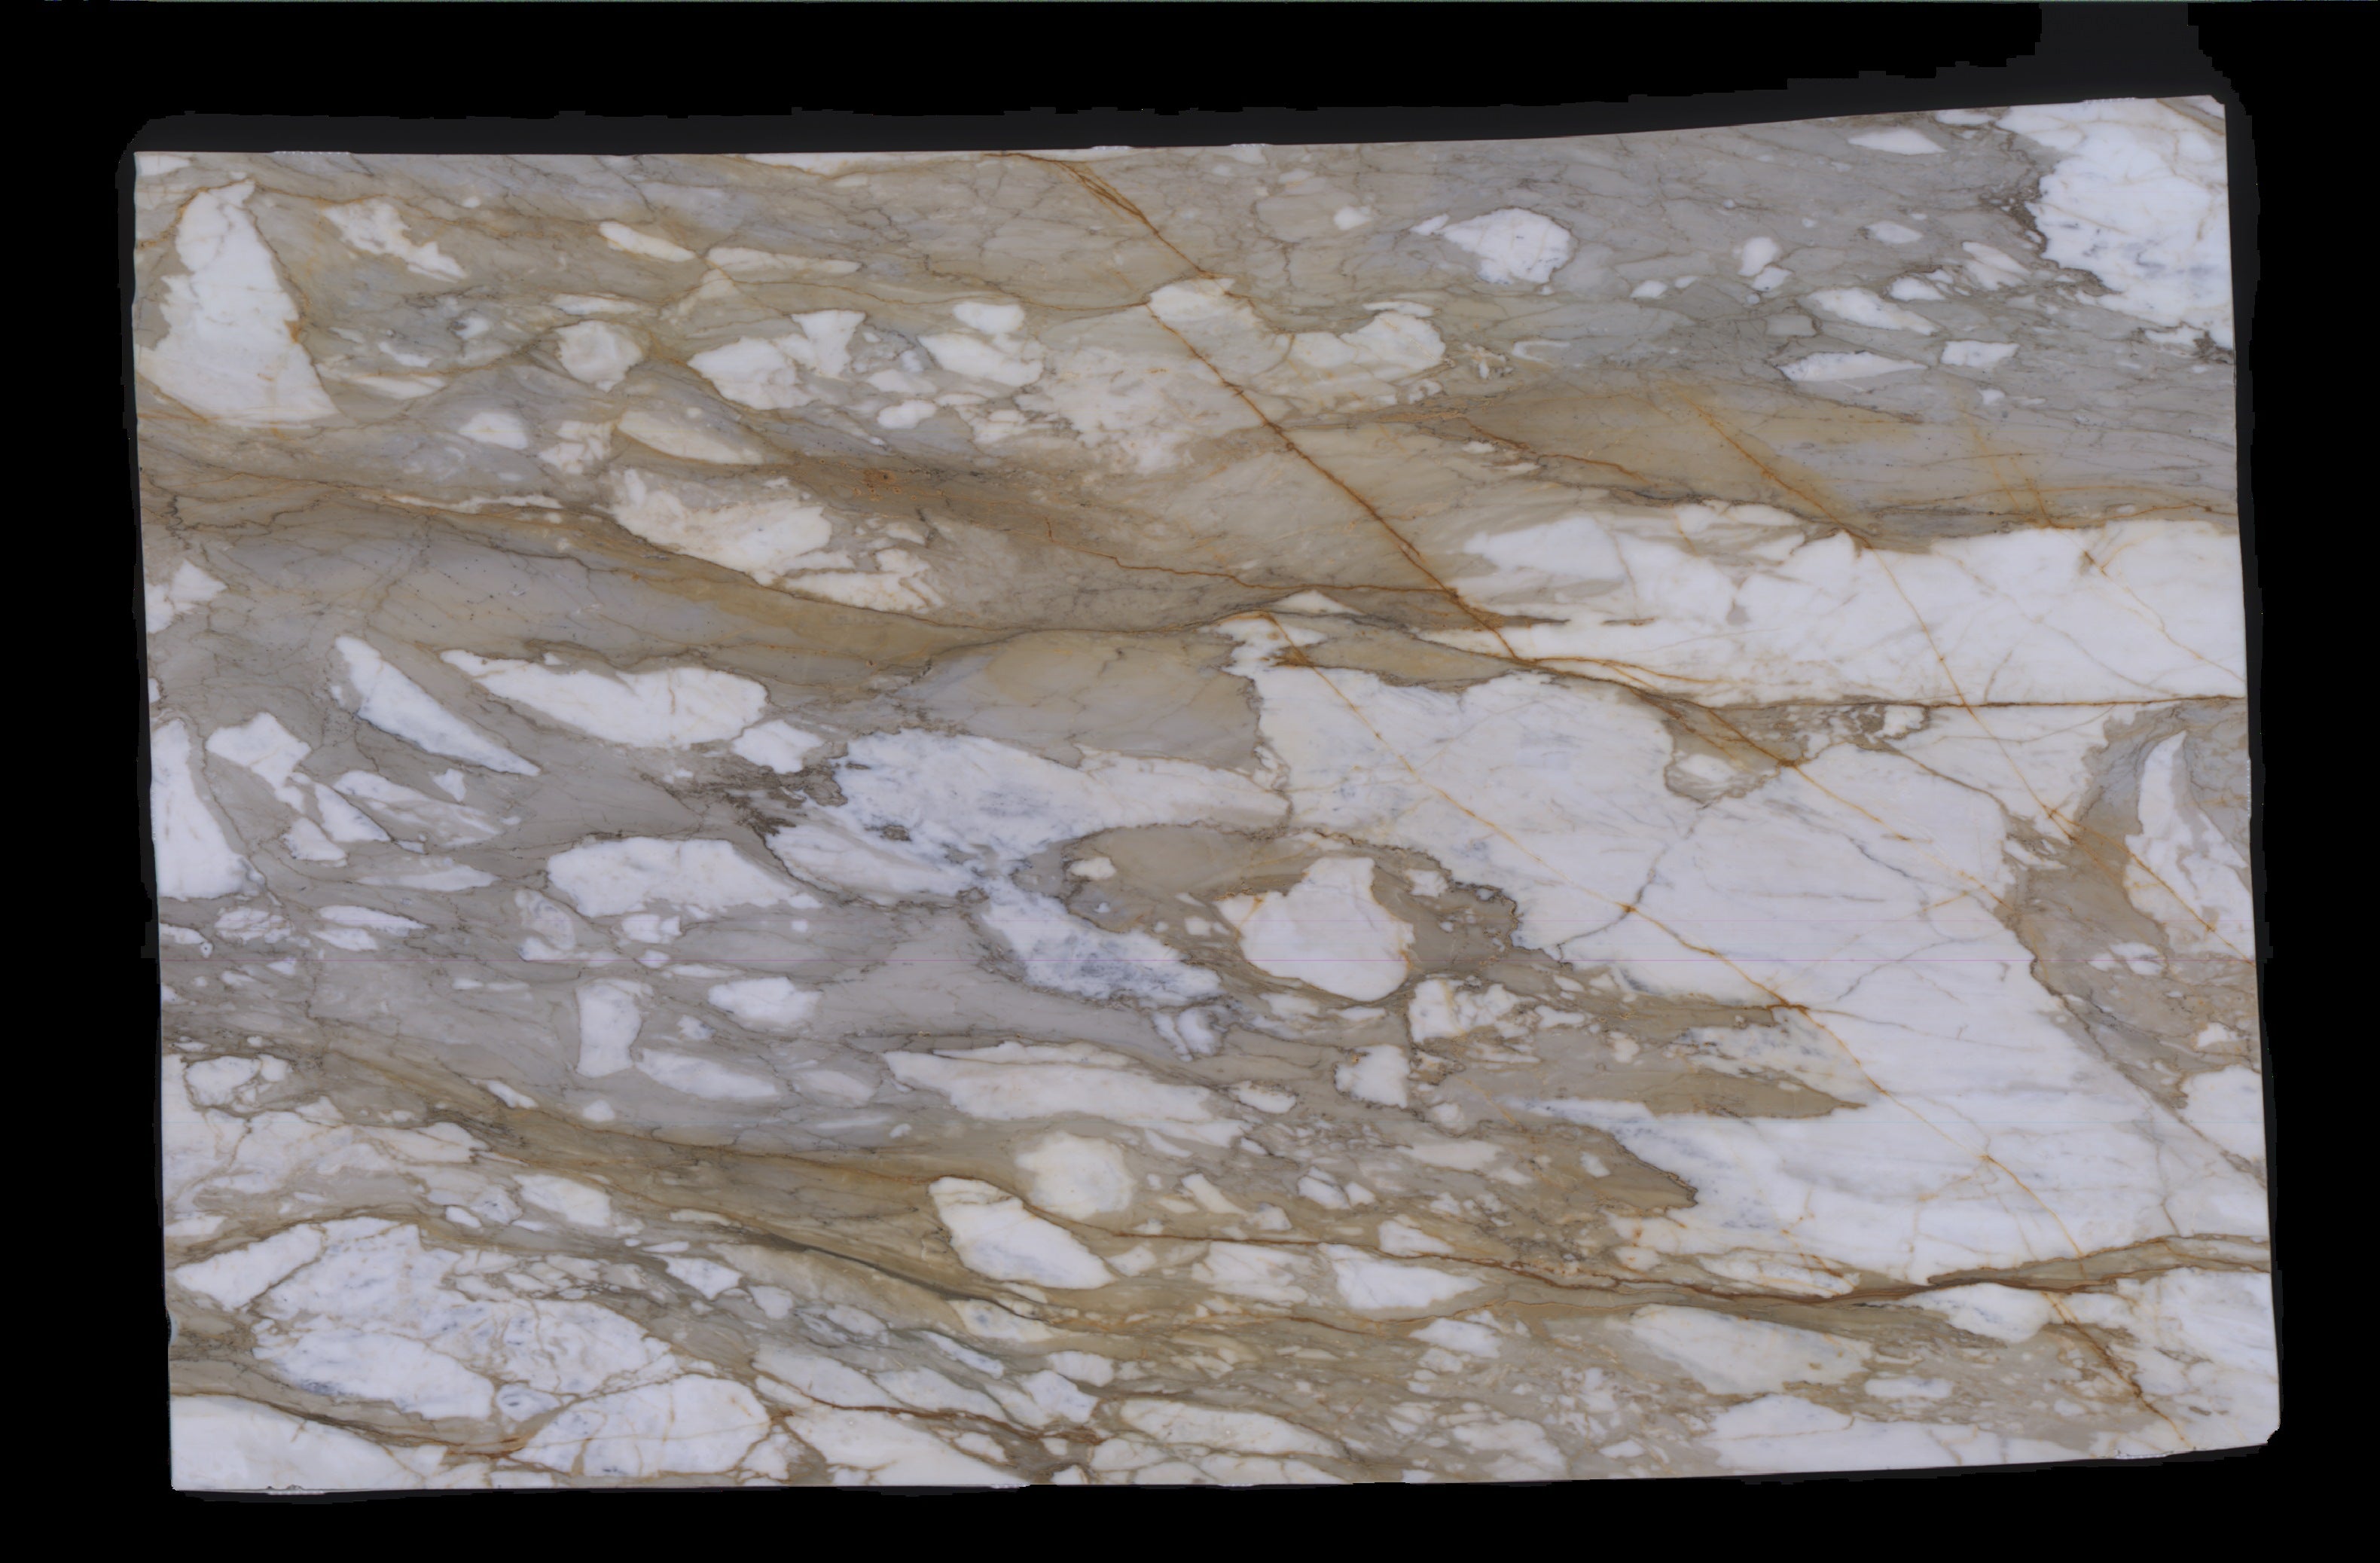  Calacatta Macchia Vecchia Marble Slab 3/4 - 953#43 -  VS 71x112 